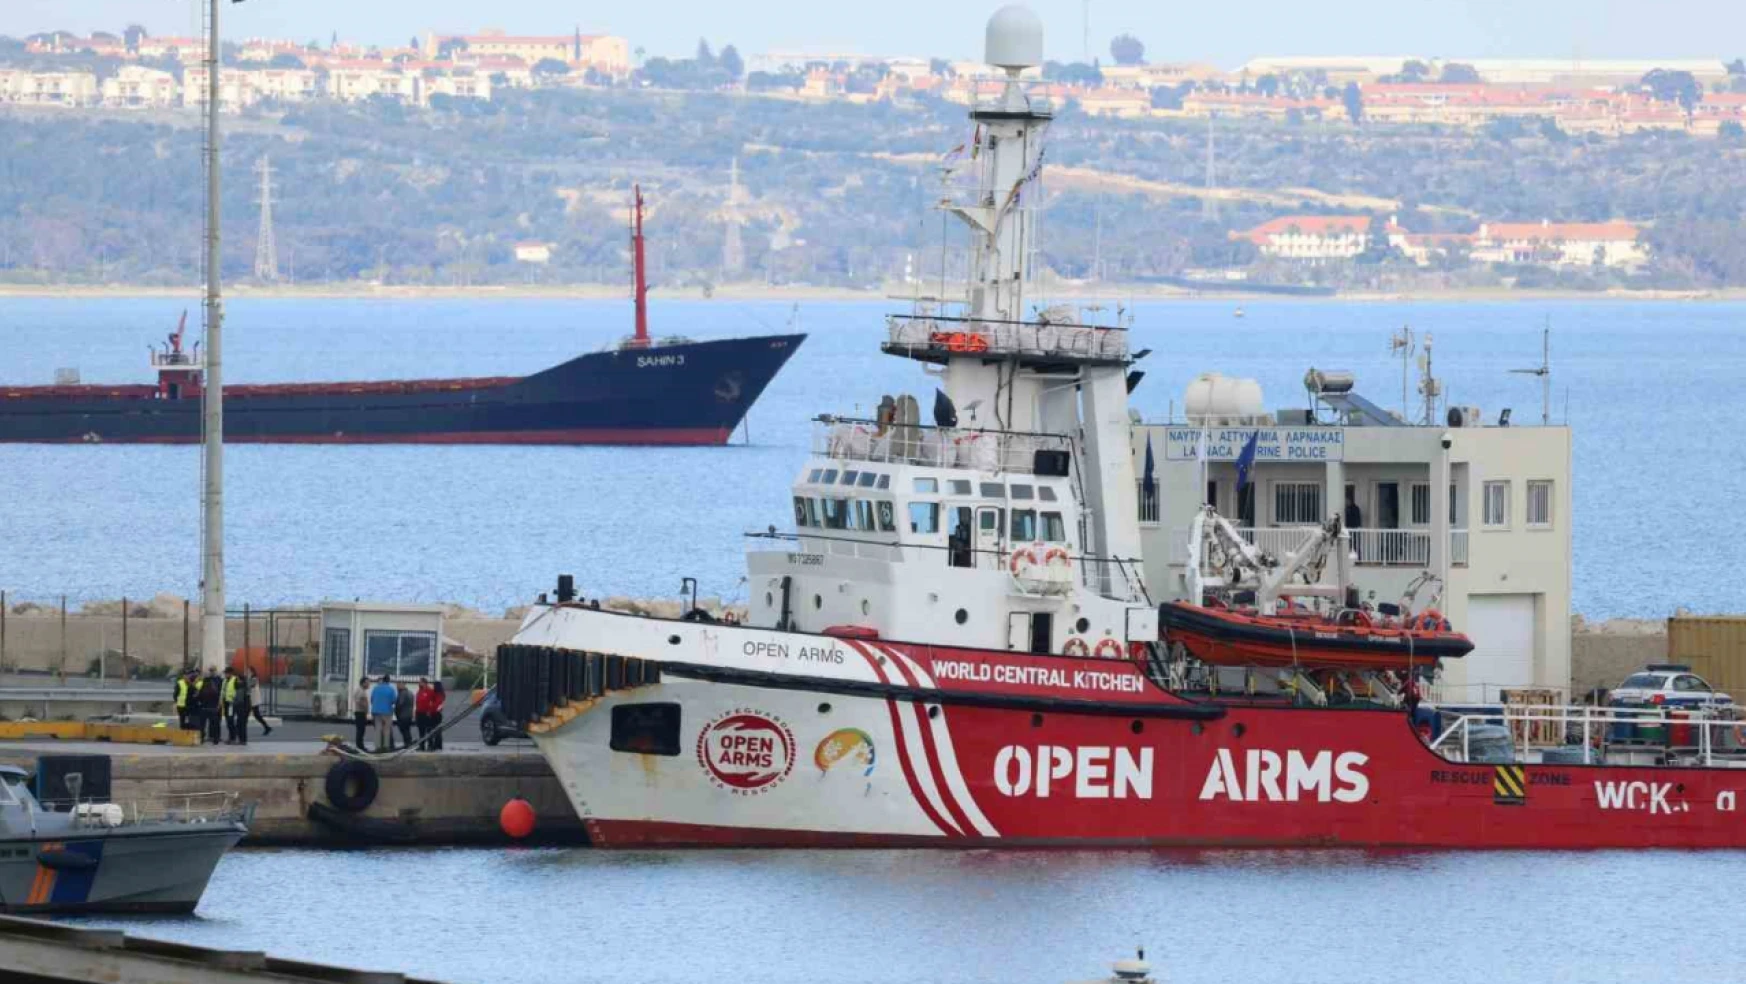 Güney Kıbrıs'tan Gazze'ye ilk yardım gemisi yola çıktı